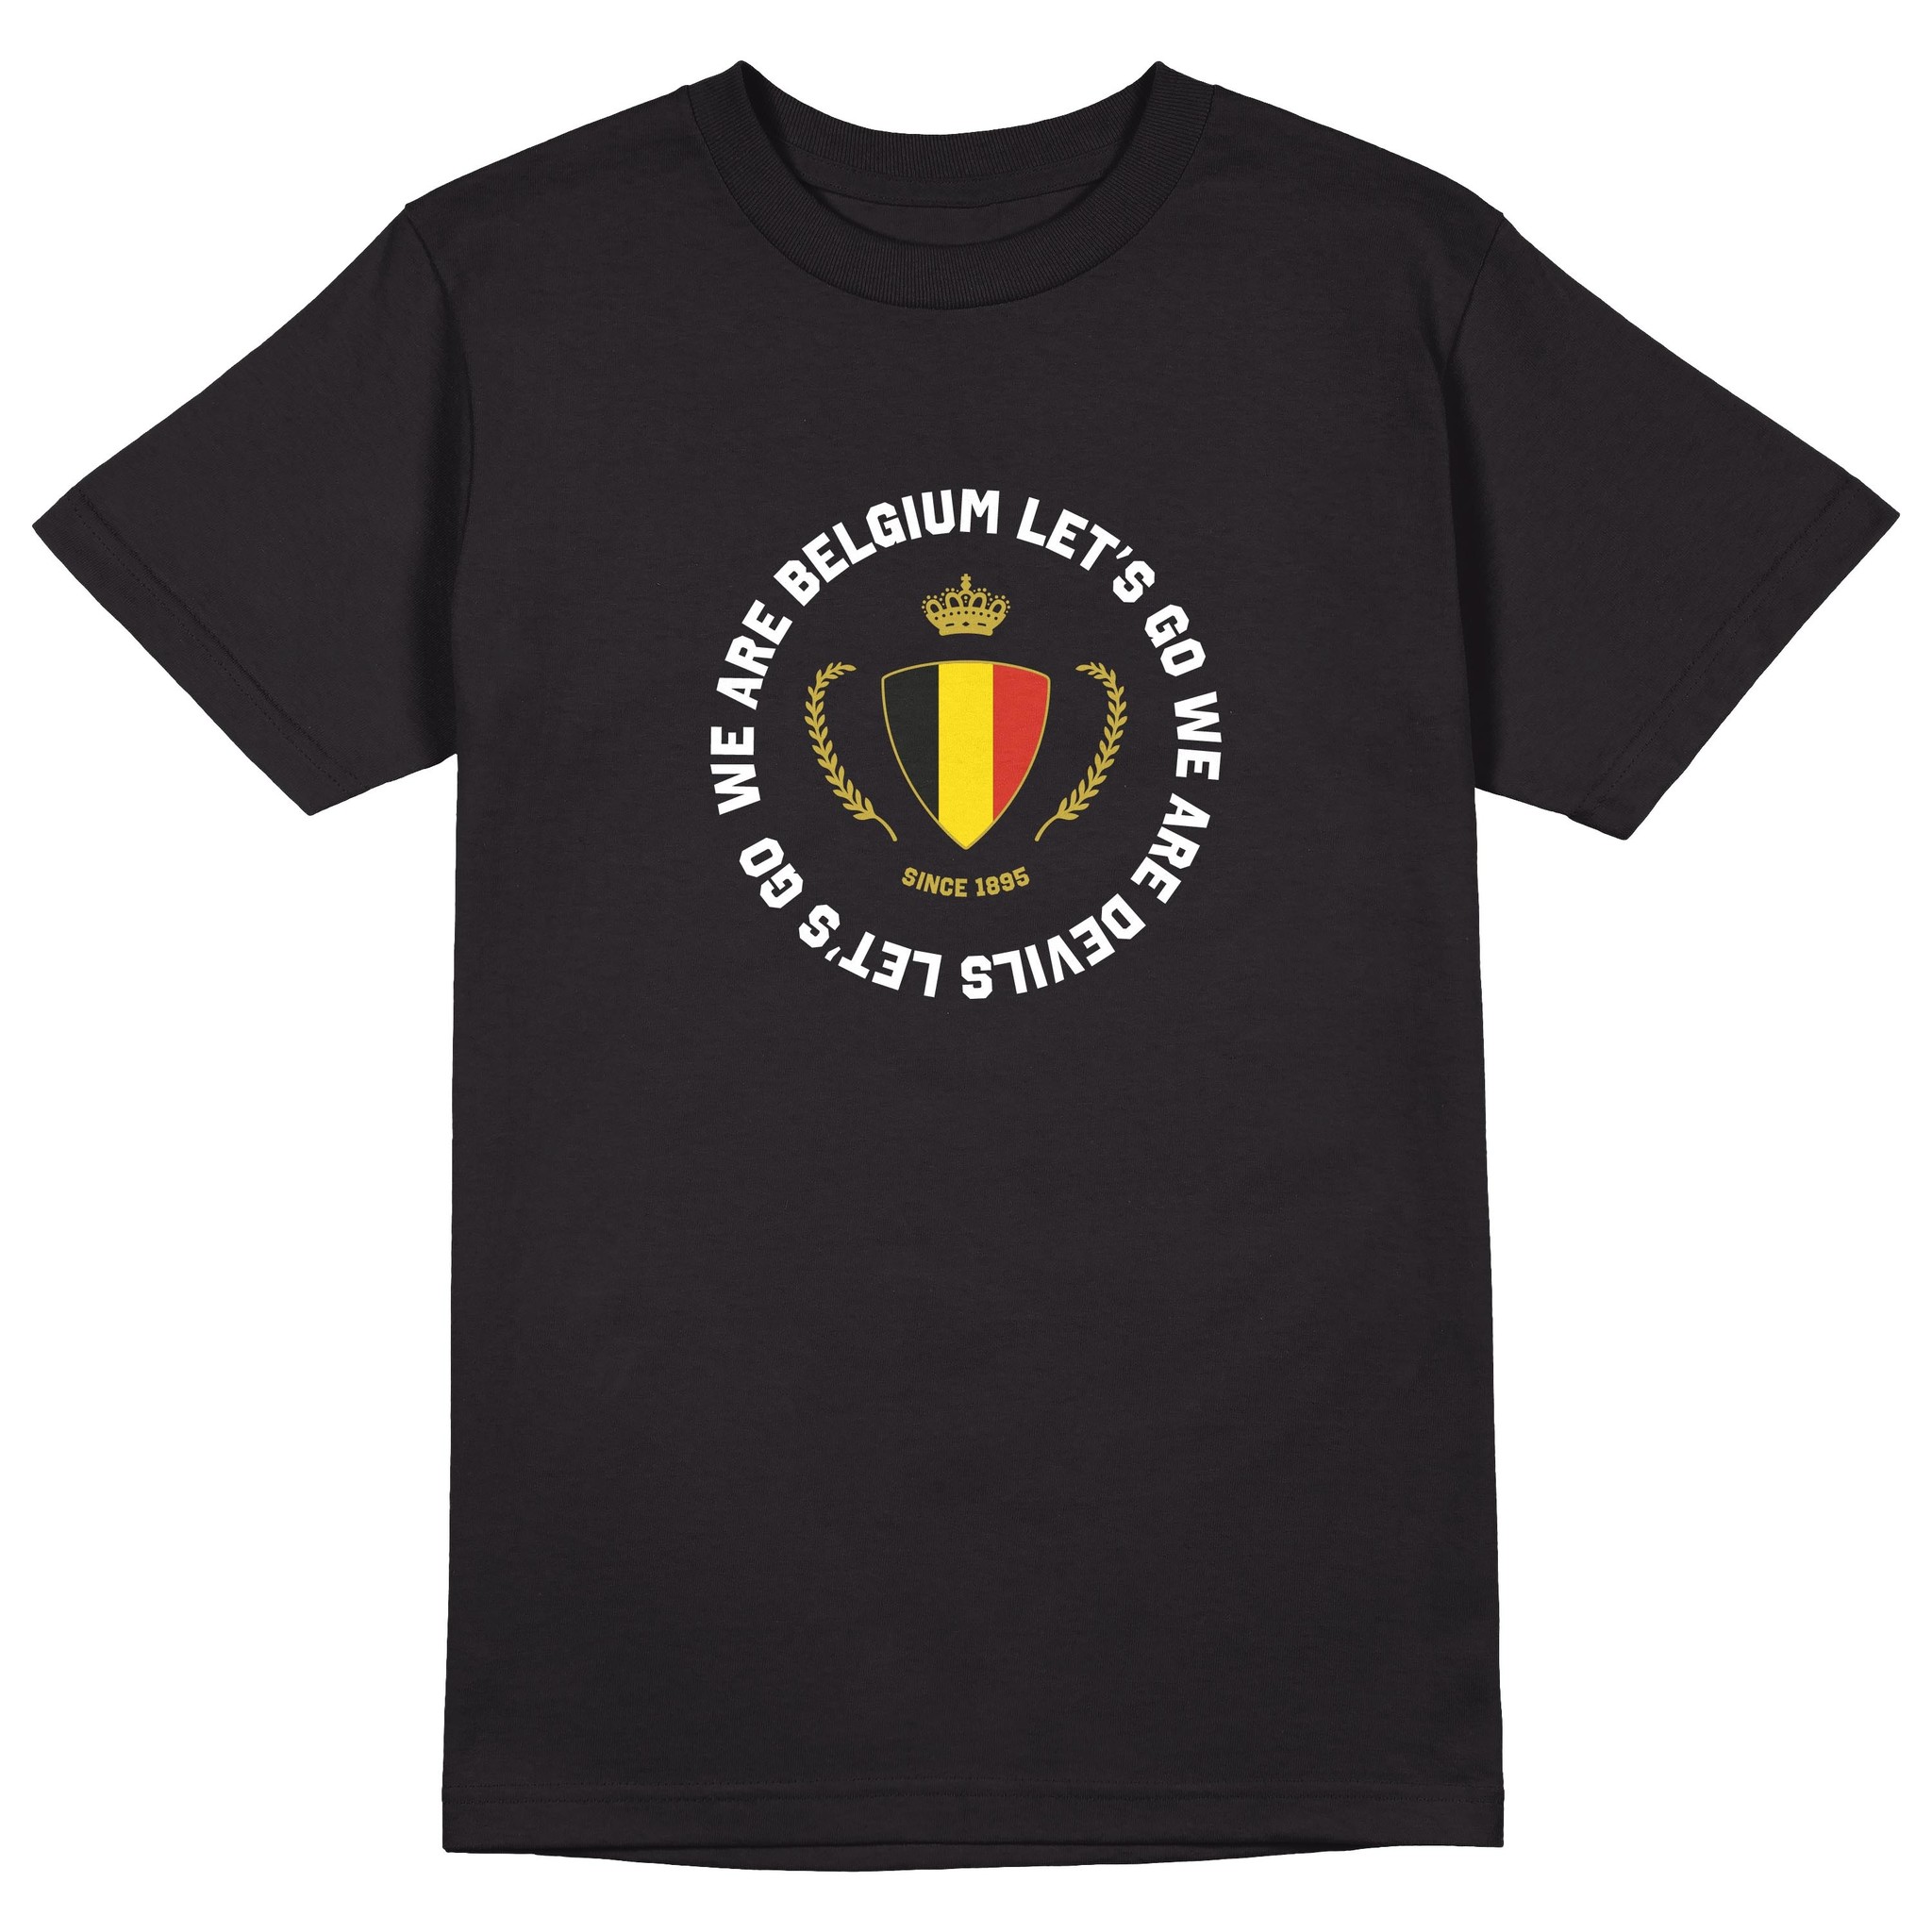 Topfanz T-shirt black Belgian circle